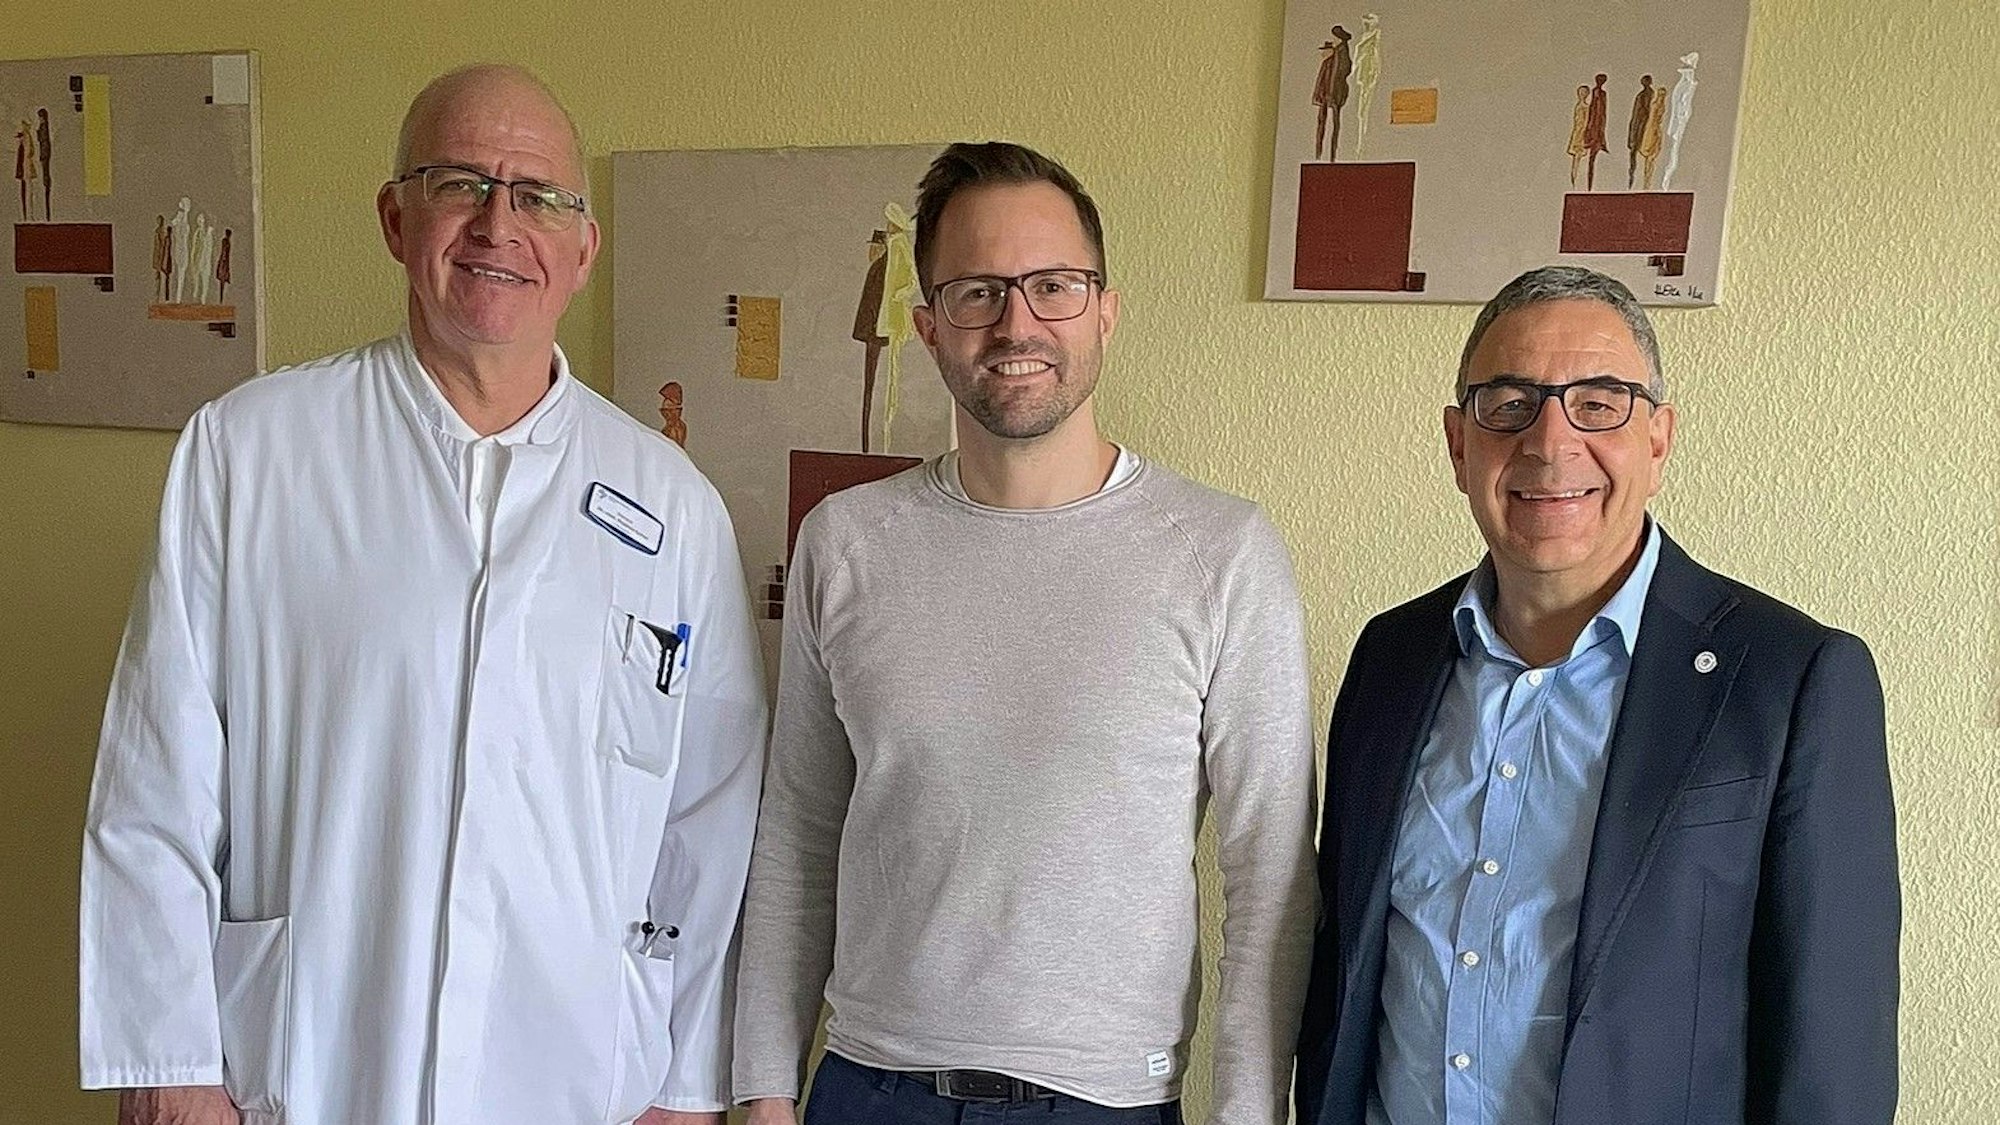 Drei Männer mit Brille stehen vor einer Wand, einer trägt einen Arztkittel.